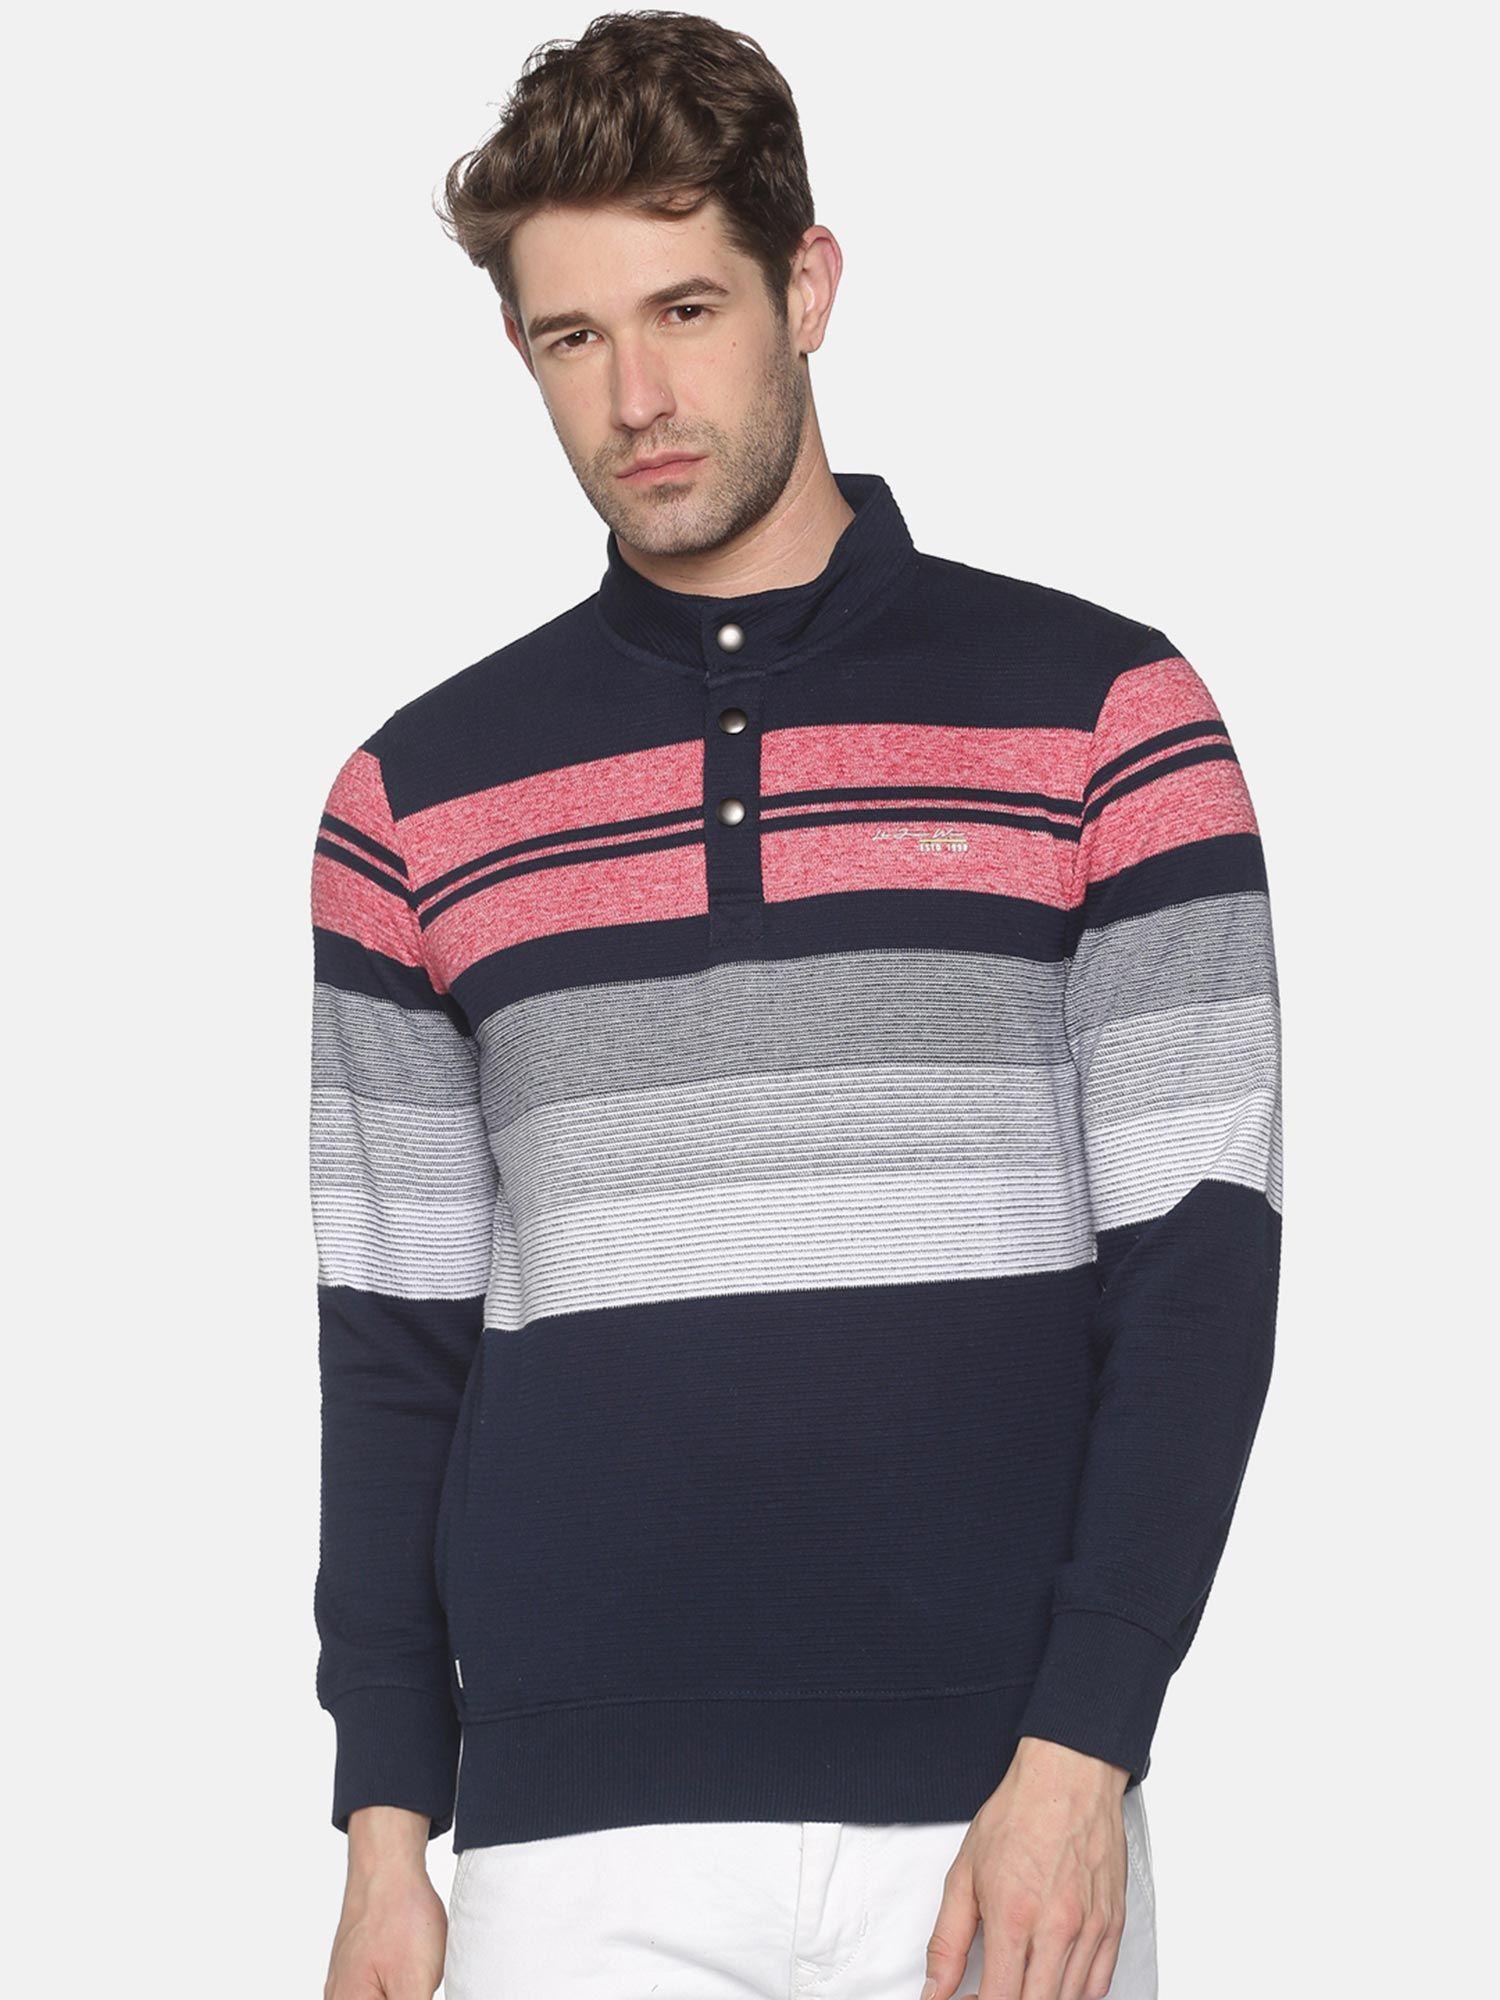 men's cotton casual navy sweatshirt